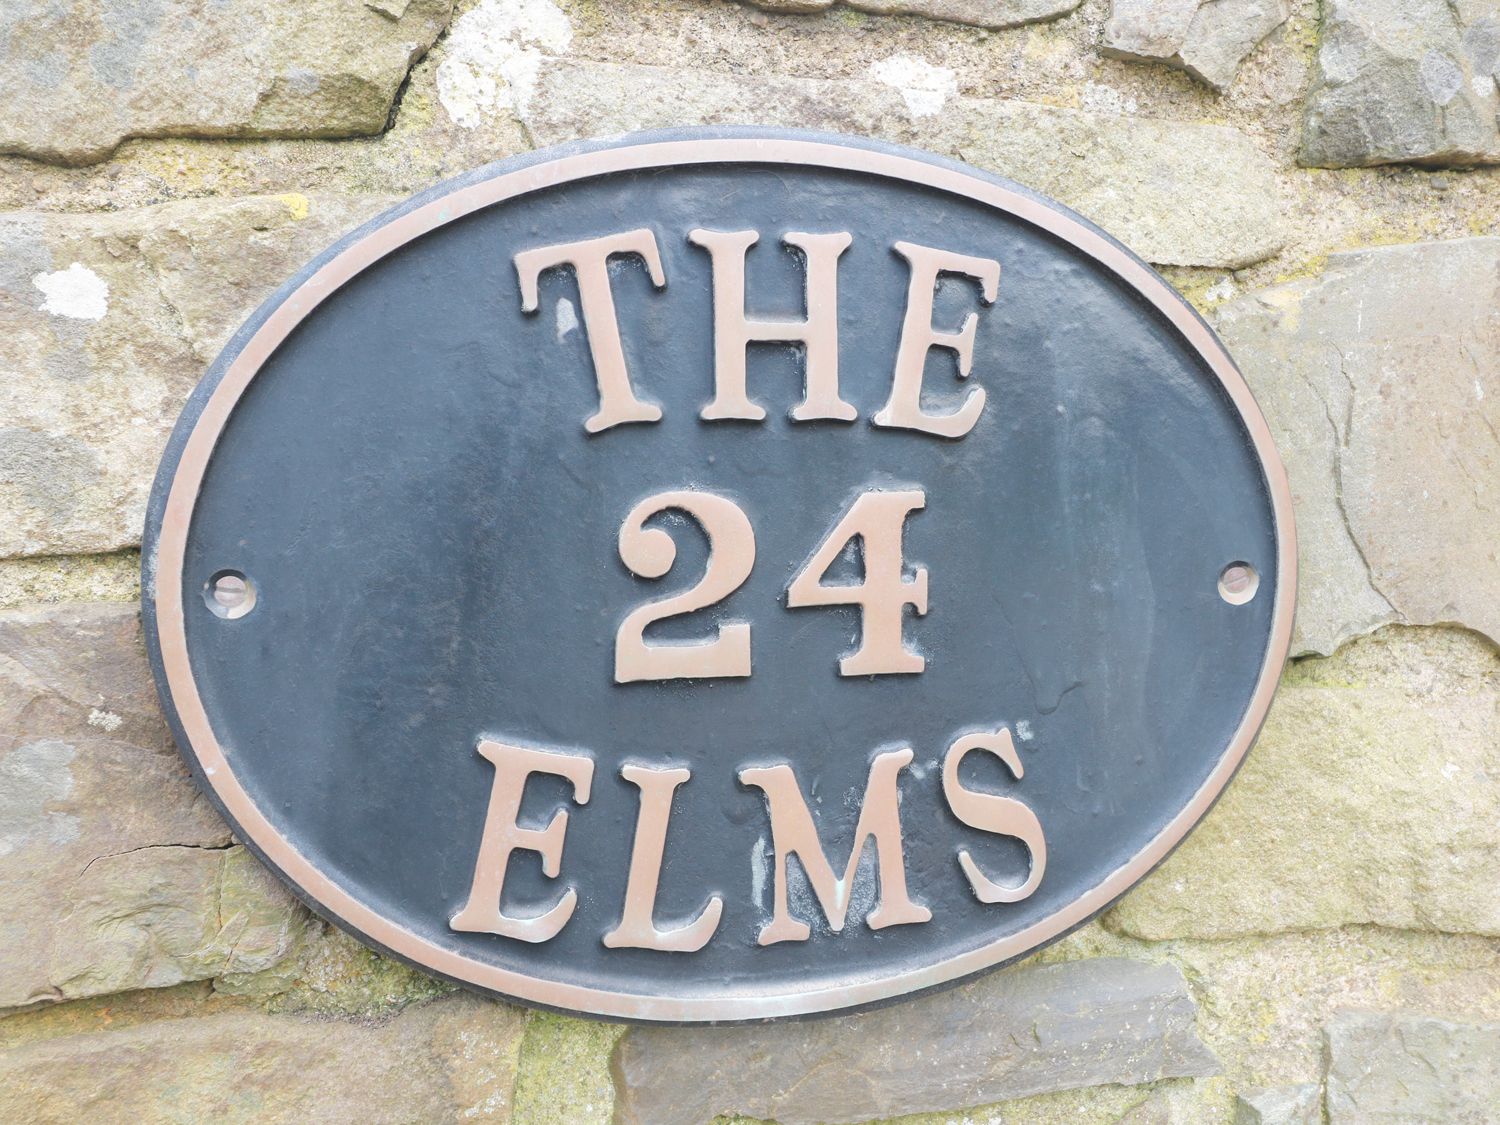 The Elms, Pembrokeshire